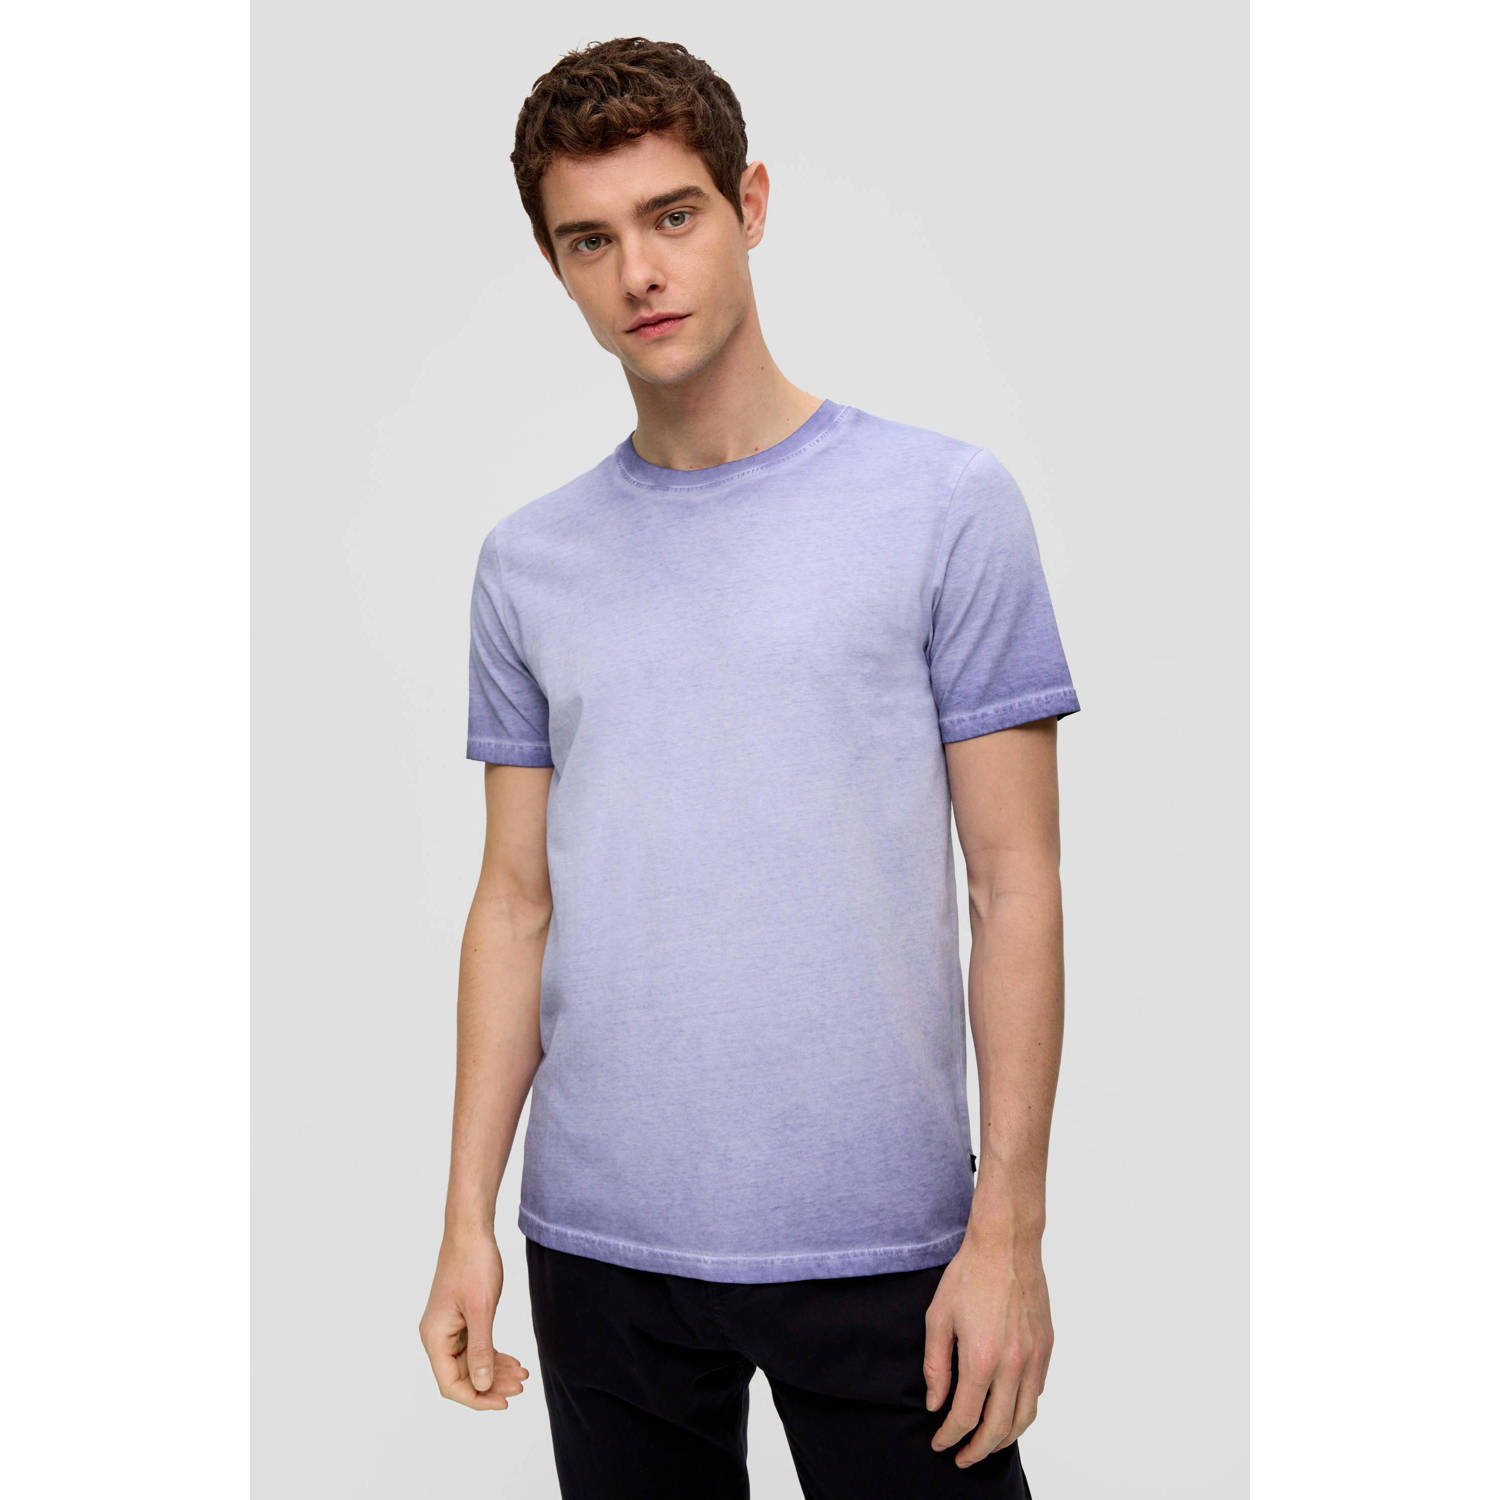 Q S by s.Oliver regular fit T-shirt violet